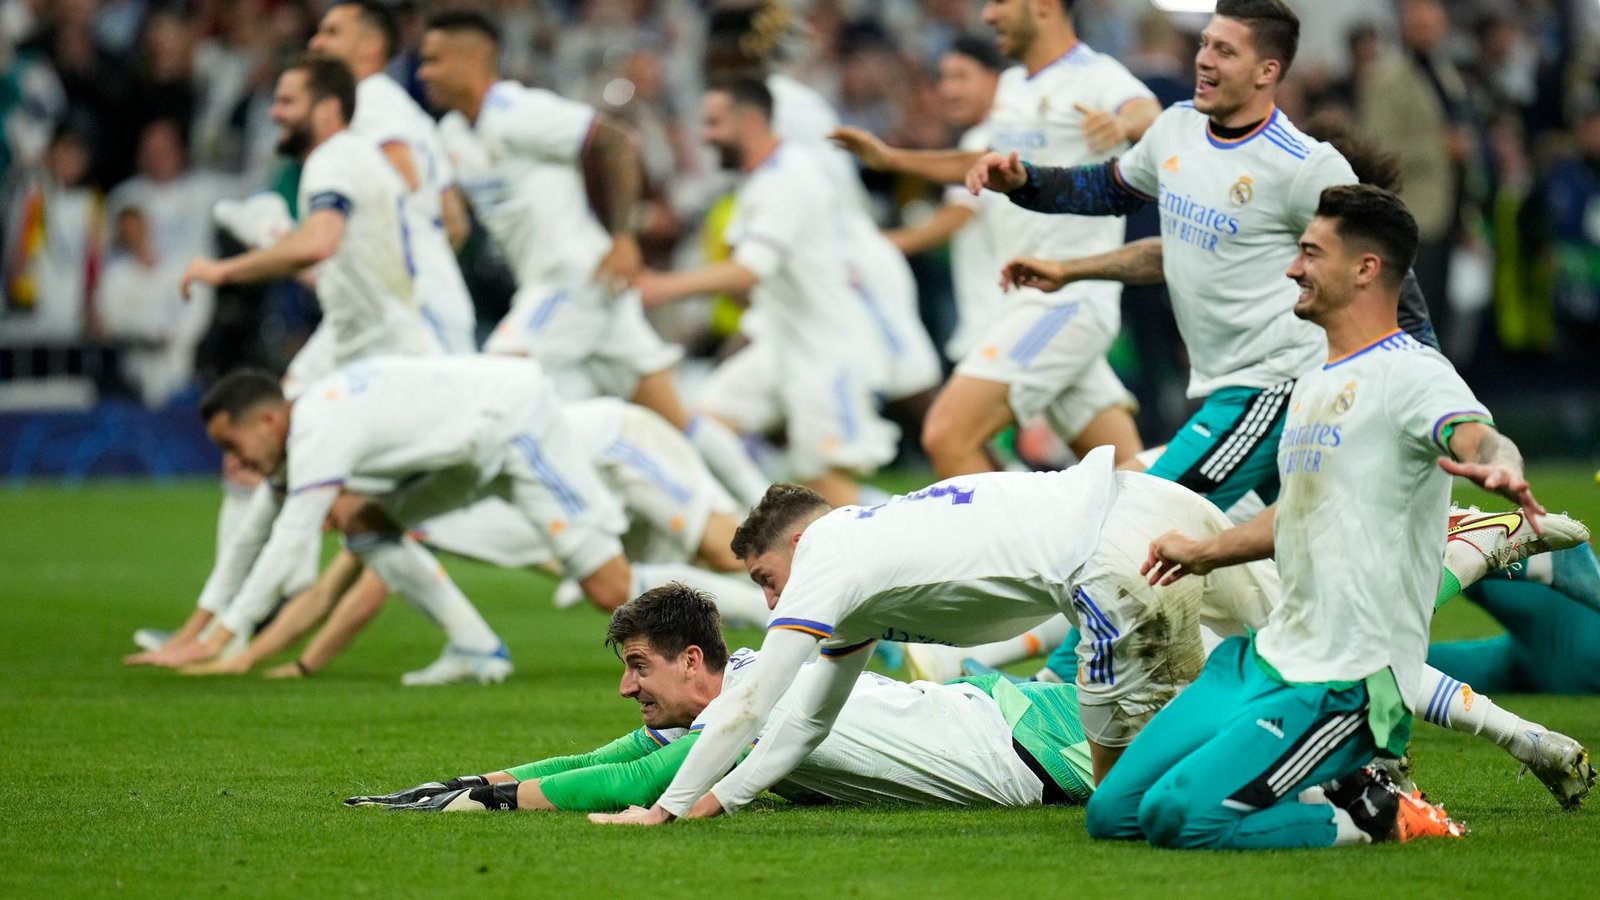 Die Stars von Real Madrid werfen sich nach ihrem 3:1-Sieg gegen Man City überglücklich auf den Rasen. Das Team steht damit im Finale der Champions League gegen den FC Liverpool.Foto: Manu Fernandez/AP/dpa